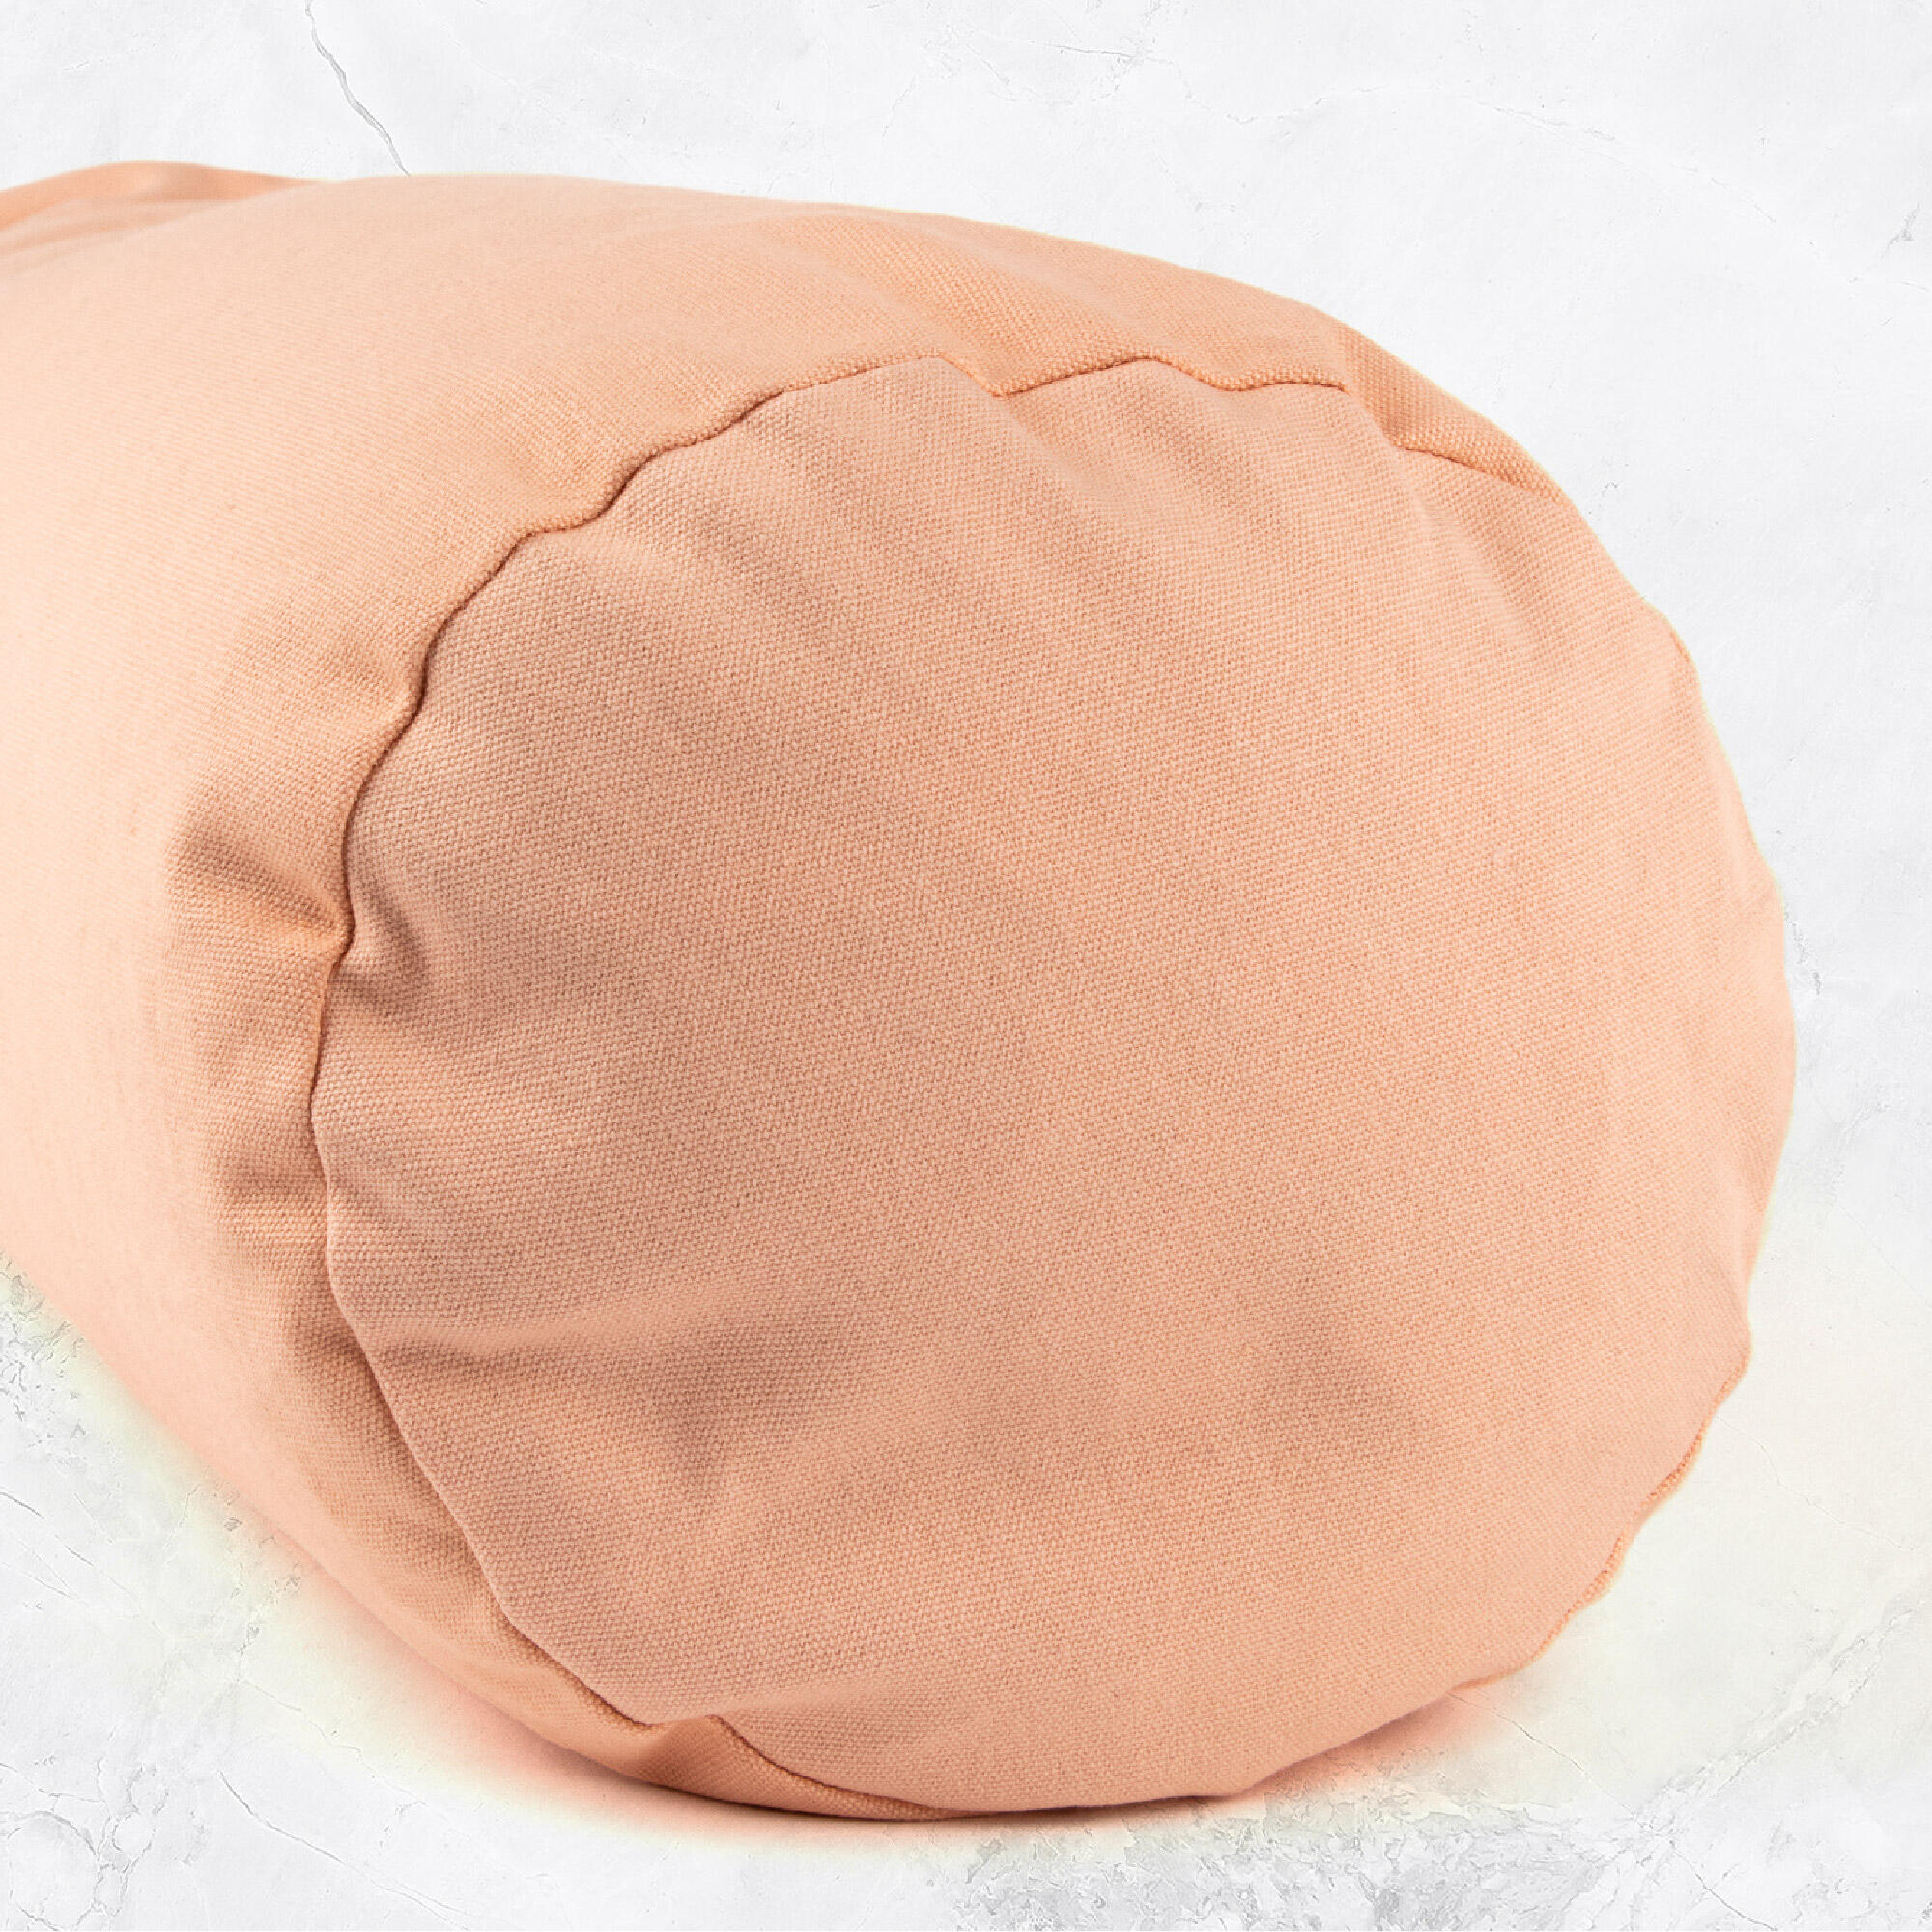 Support Bolster Pillow - Pink 5/8